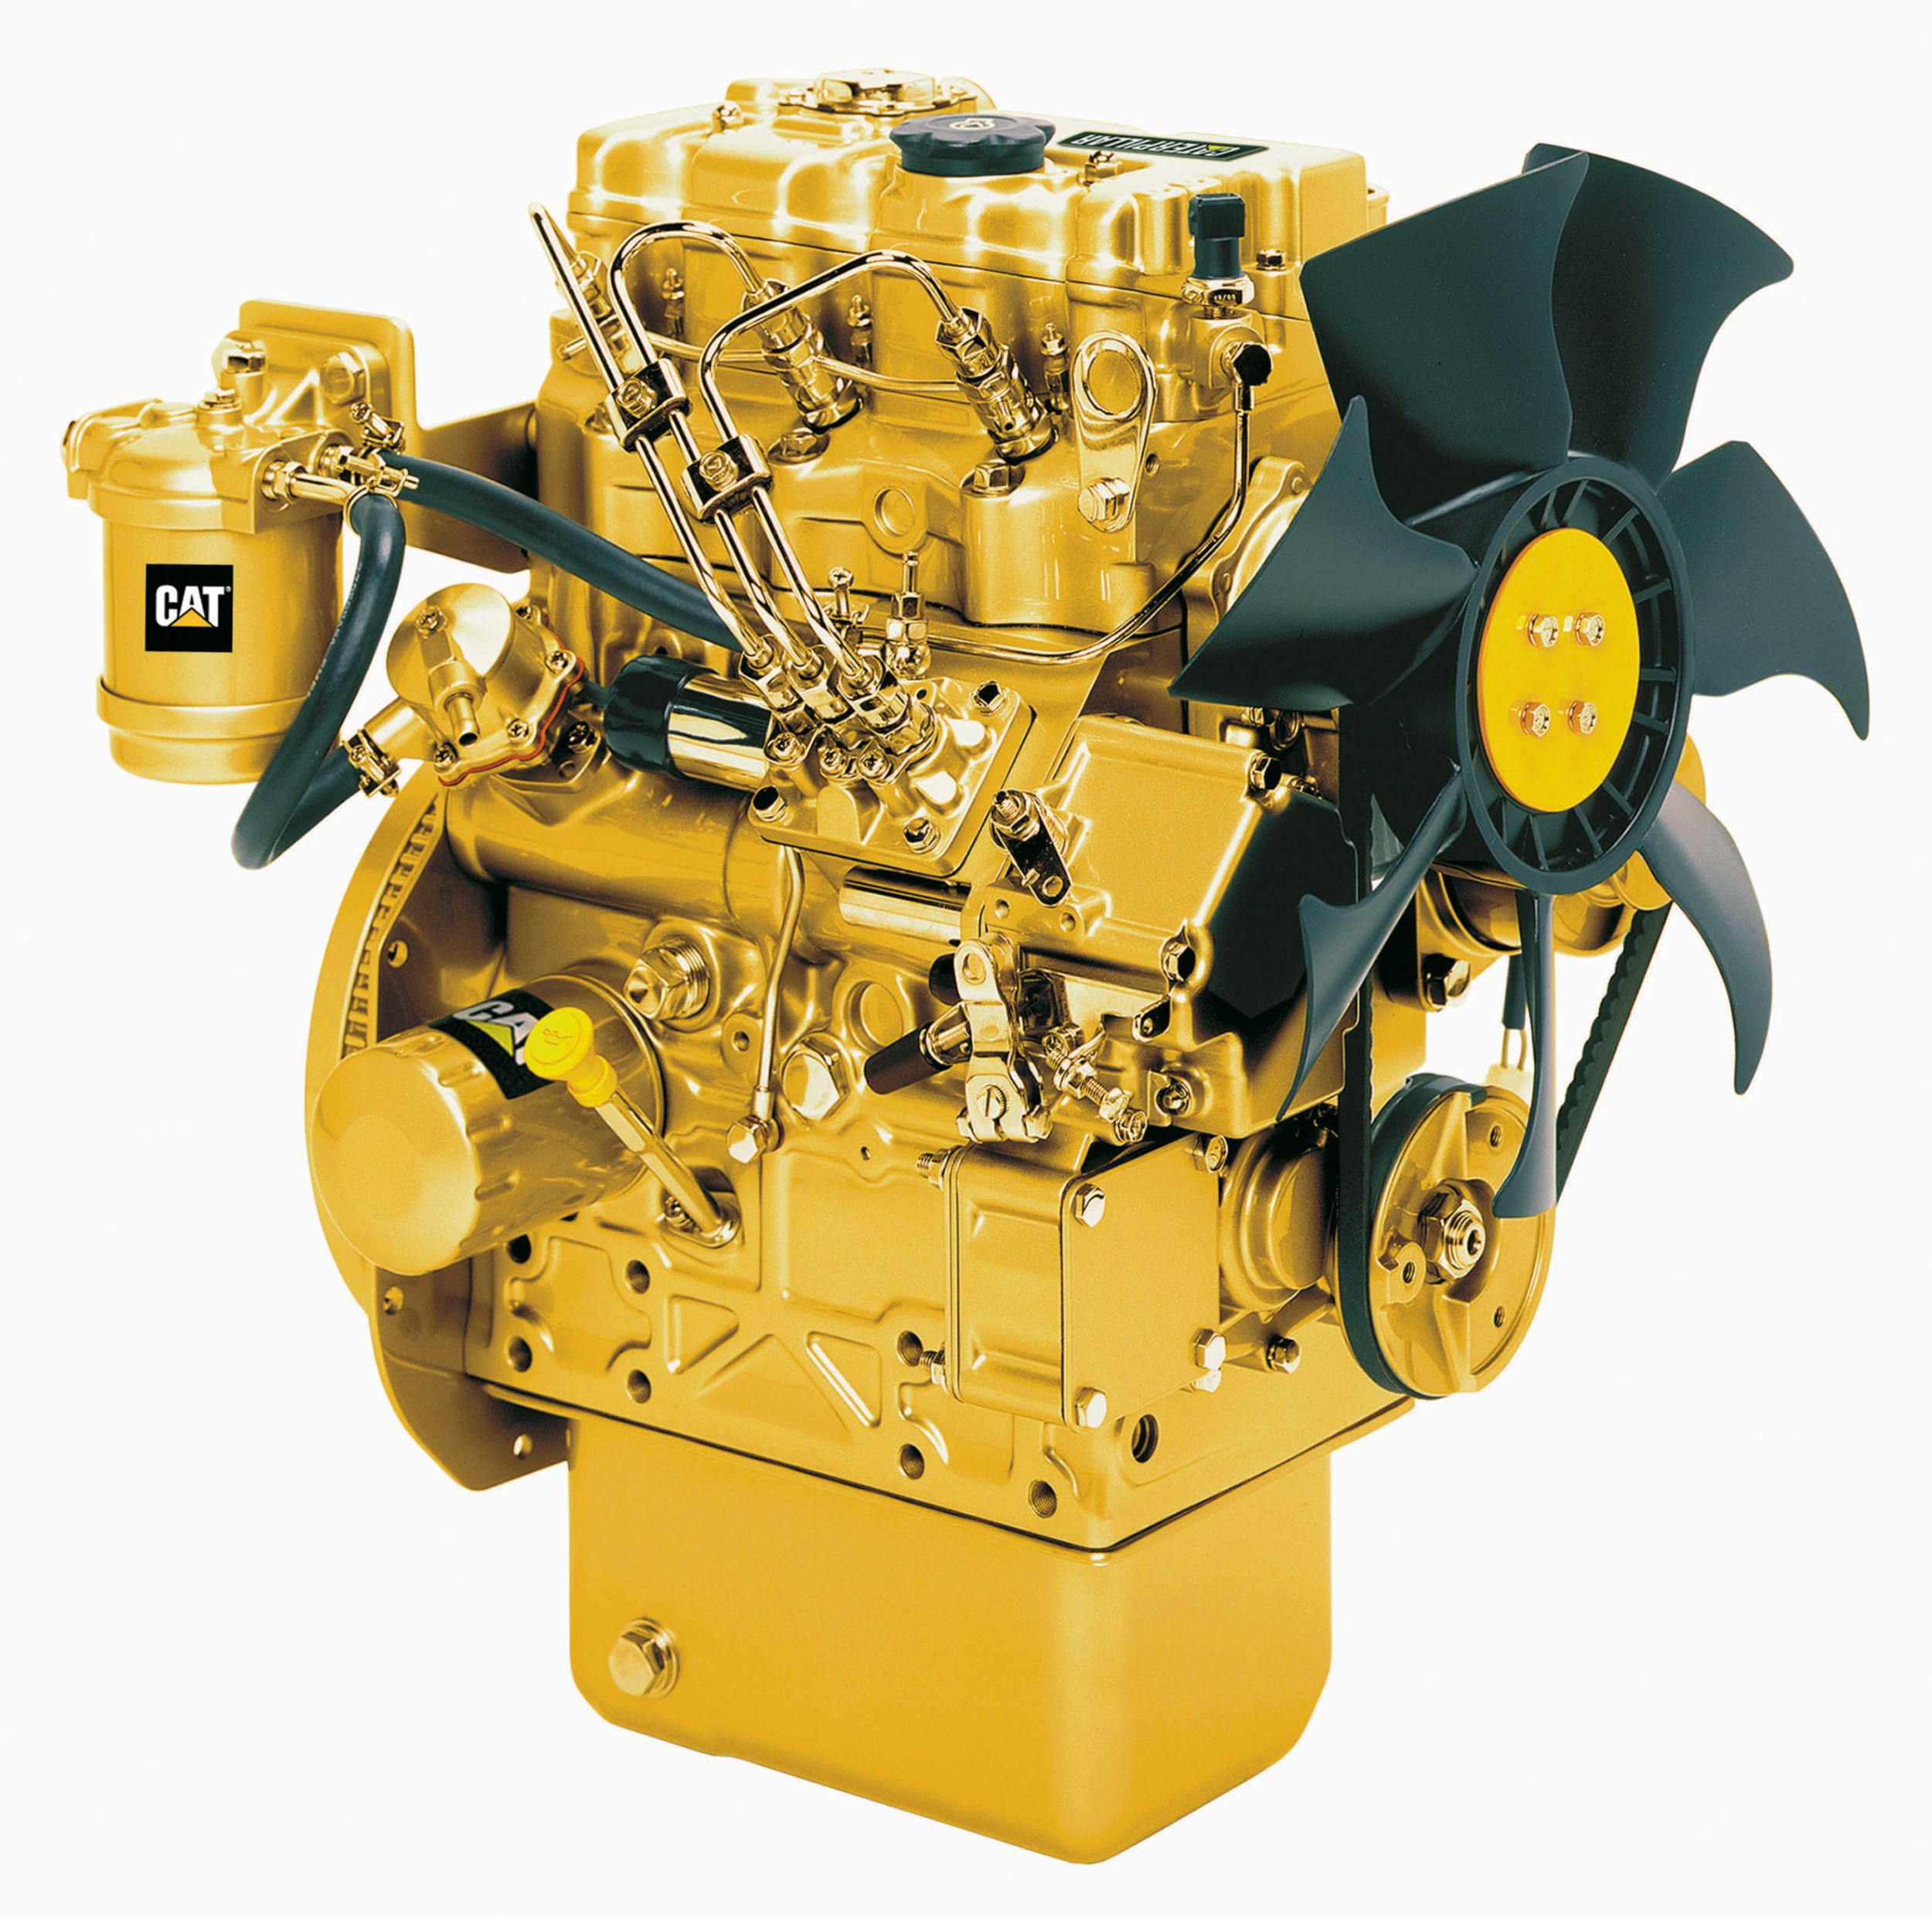 Motores Diésel C1.1 Tier 4: altamente regulados